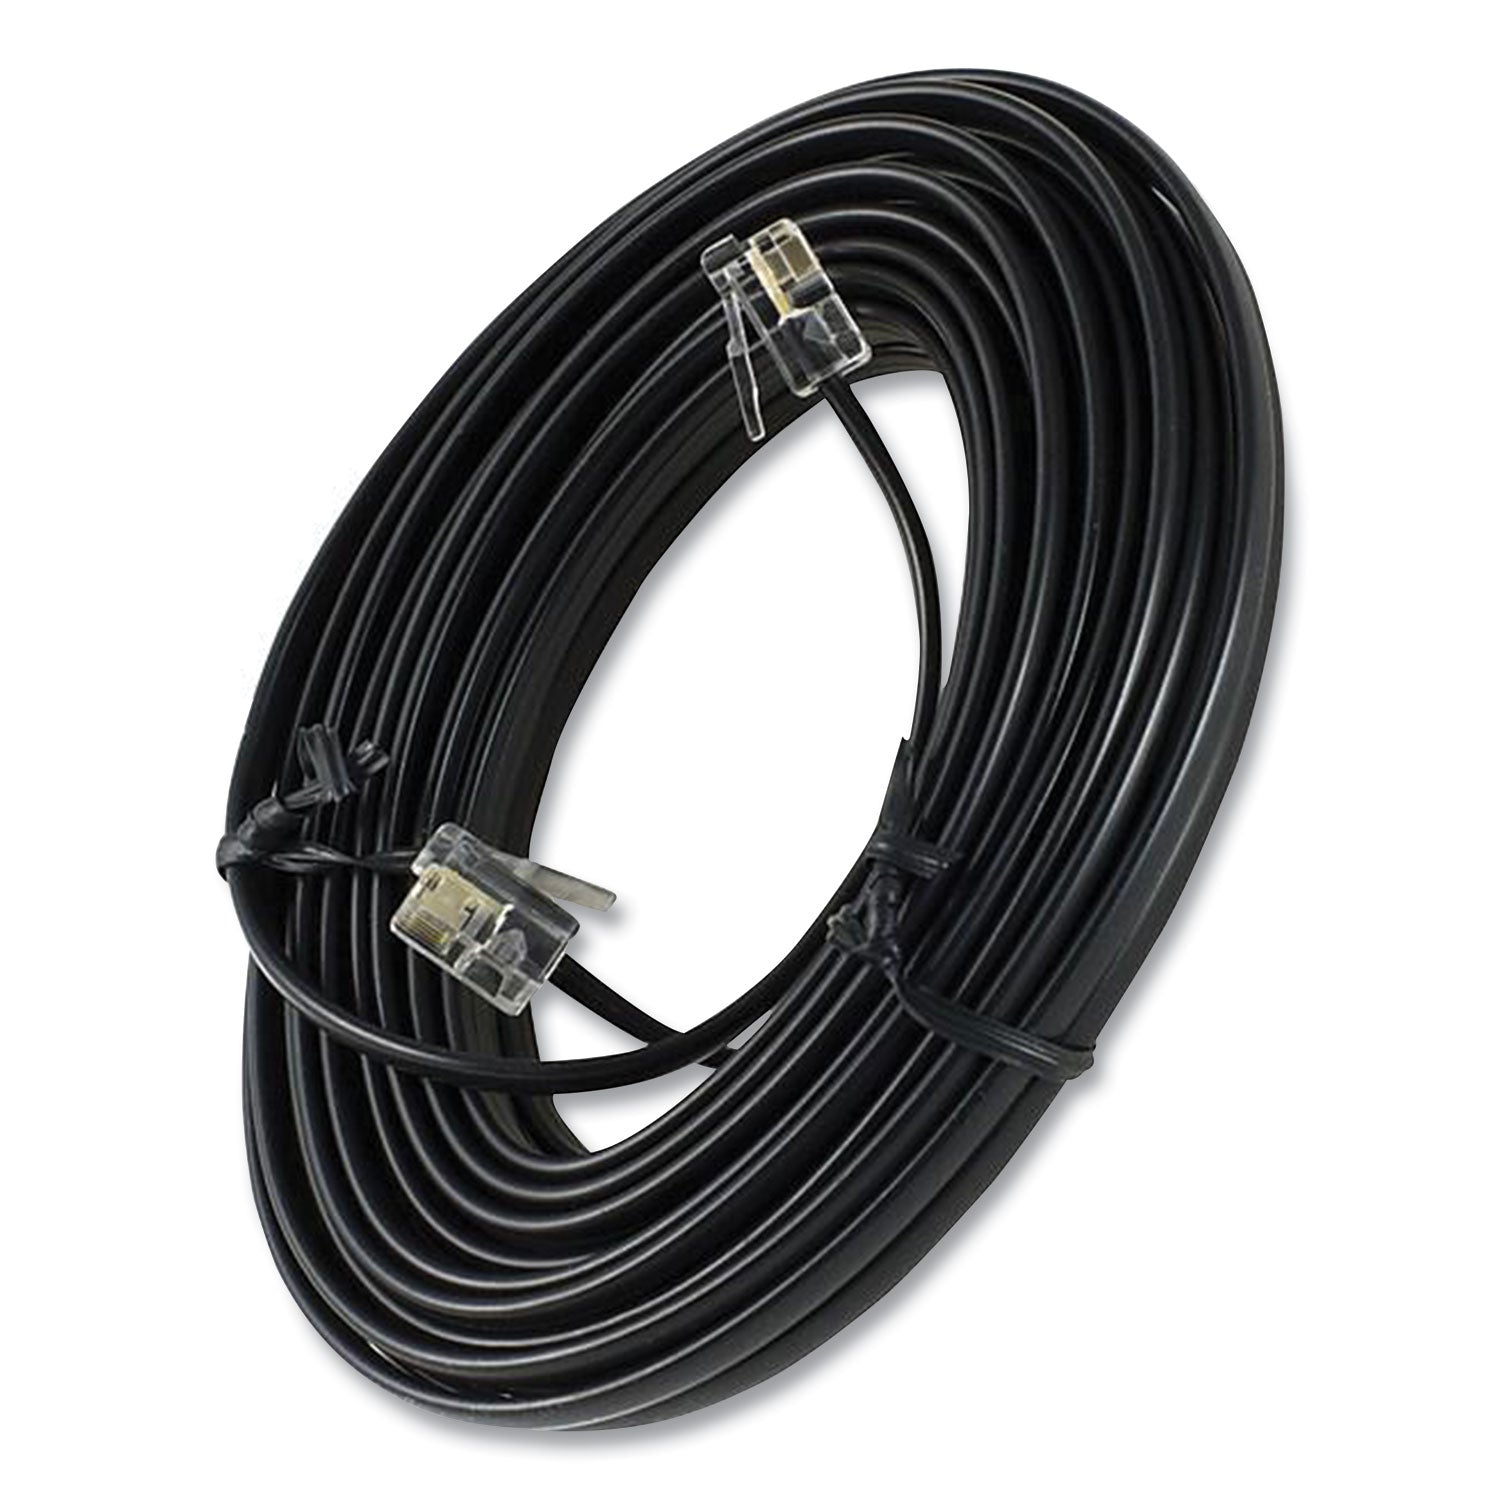 line-cord-plug-plug-25-ft-black_pwg76580999 - 2